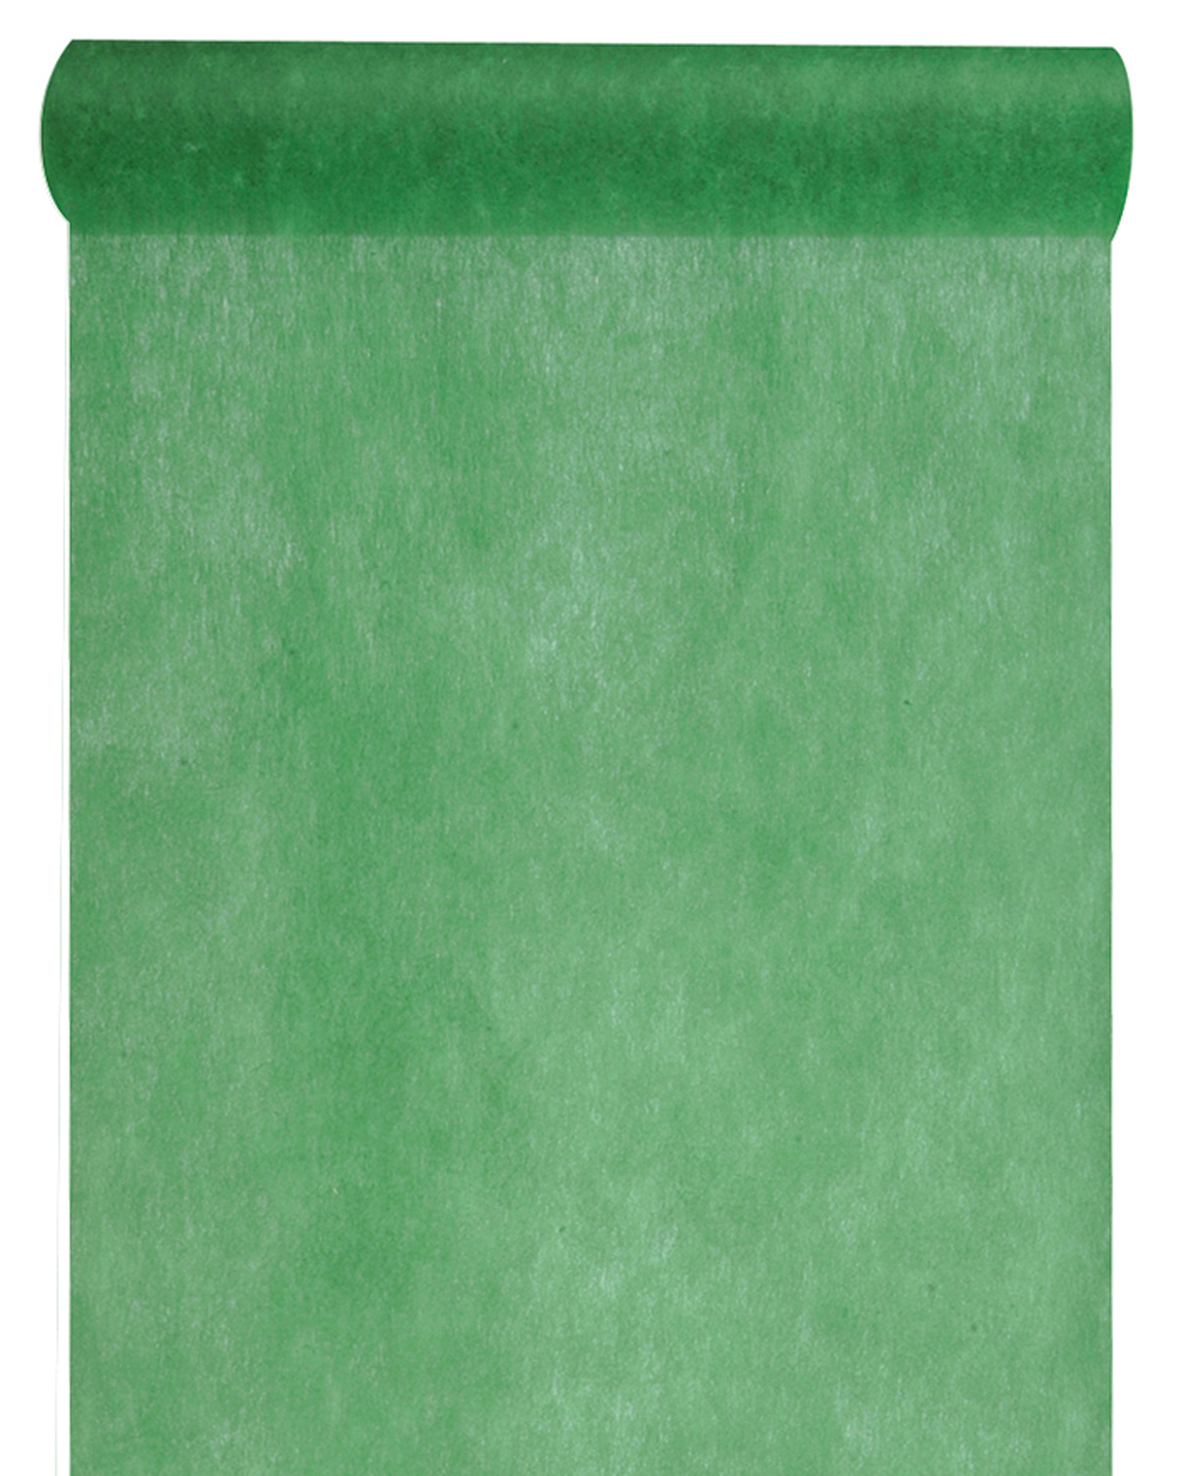 Vlies-Tischläufer BUDGET, dunkelgrün, 60 cm breit, 10 m Rolle - tischlaeufer, budget, dekovlies